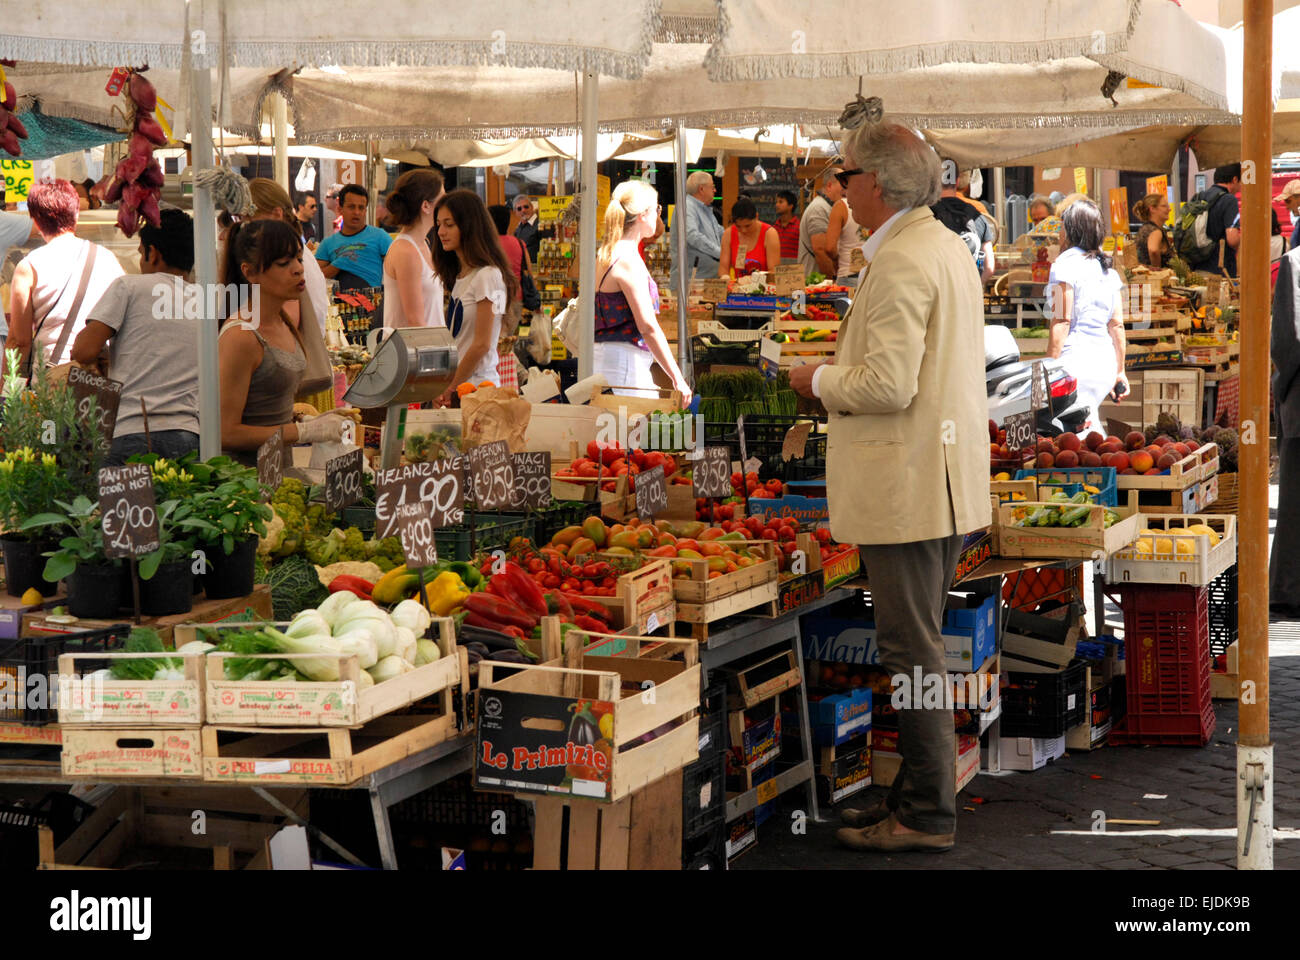 Shopper and stallholder in the market at Campo de' Fiore, Rome. Stock Photo